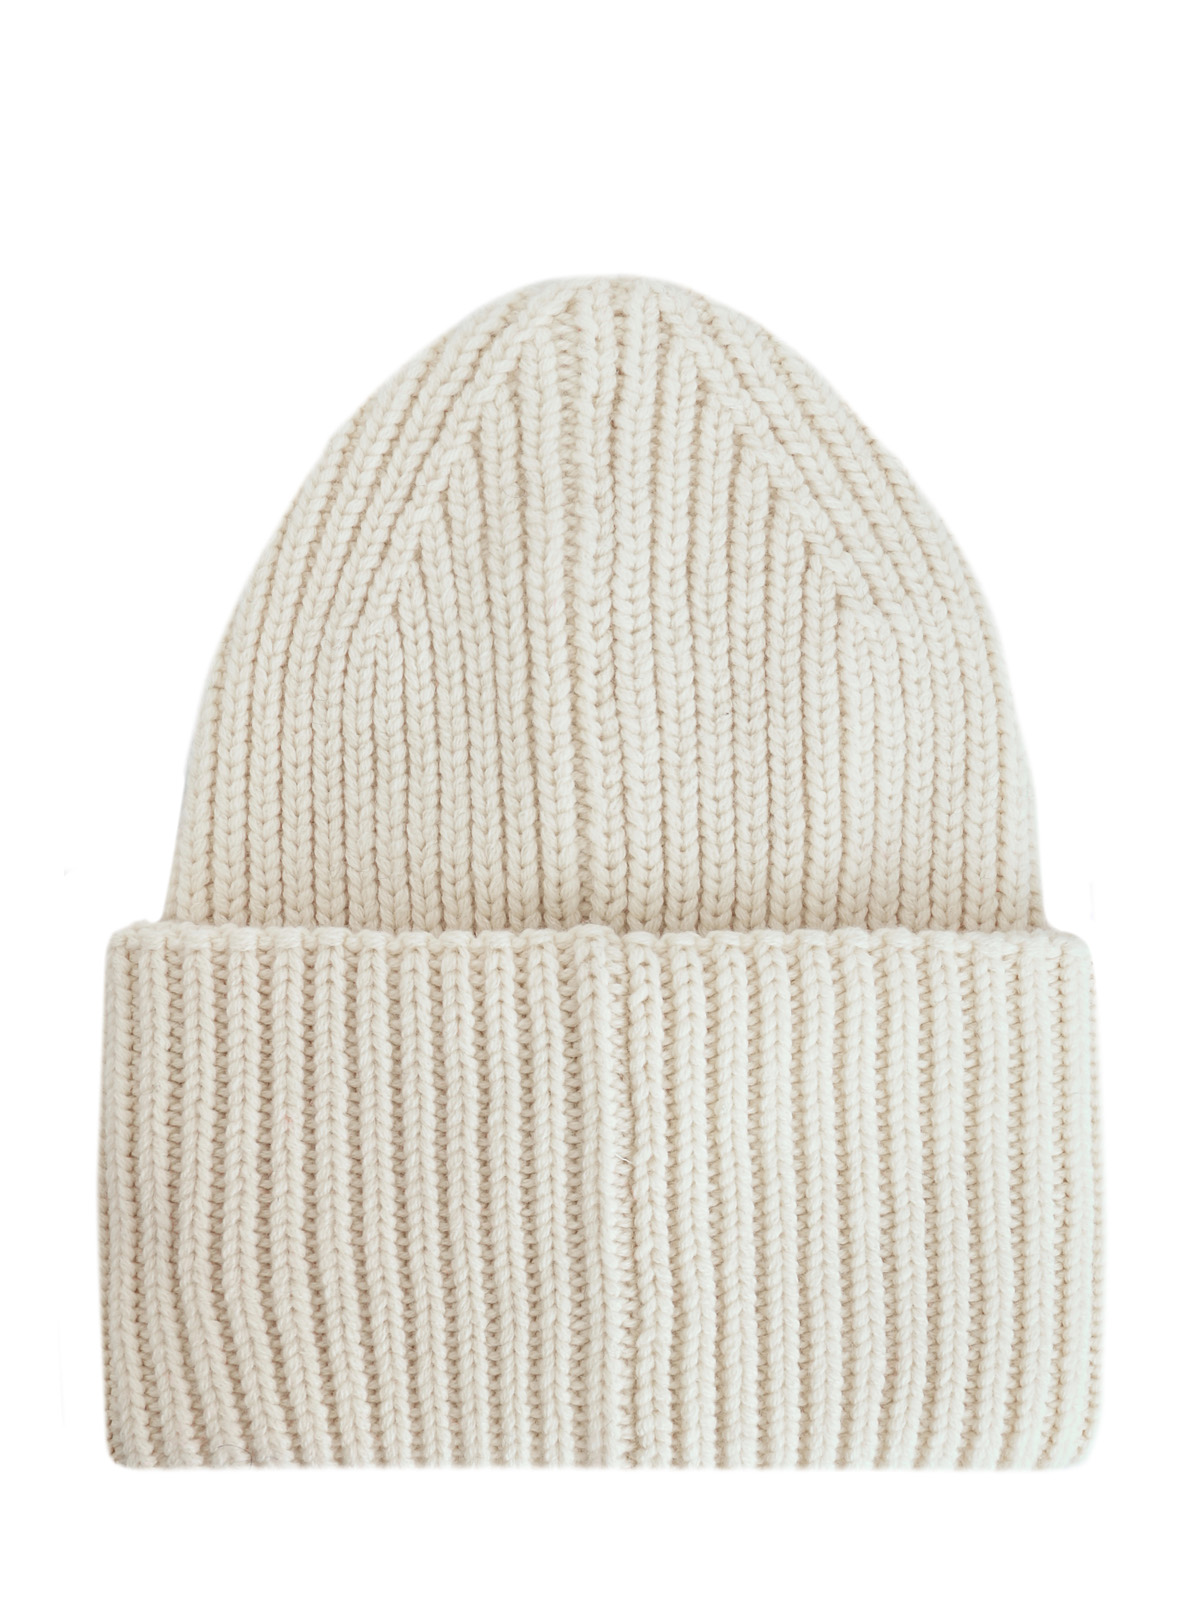 Светлая шапка из шерсти и кашемира с фетровым логотипом MONCLER, цвет белый, размер 40.5;41;41.5;42;42.5;43;43.5;44 - фото 2